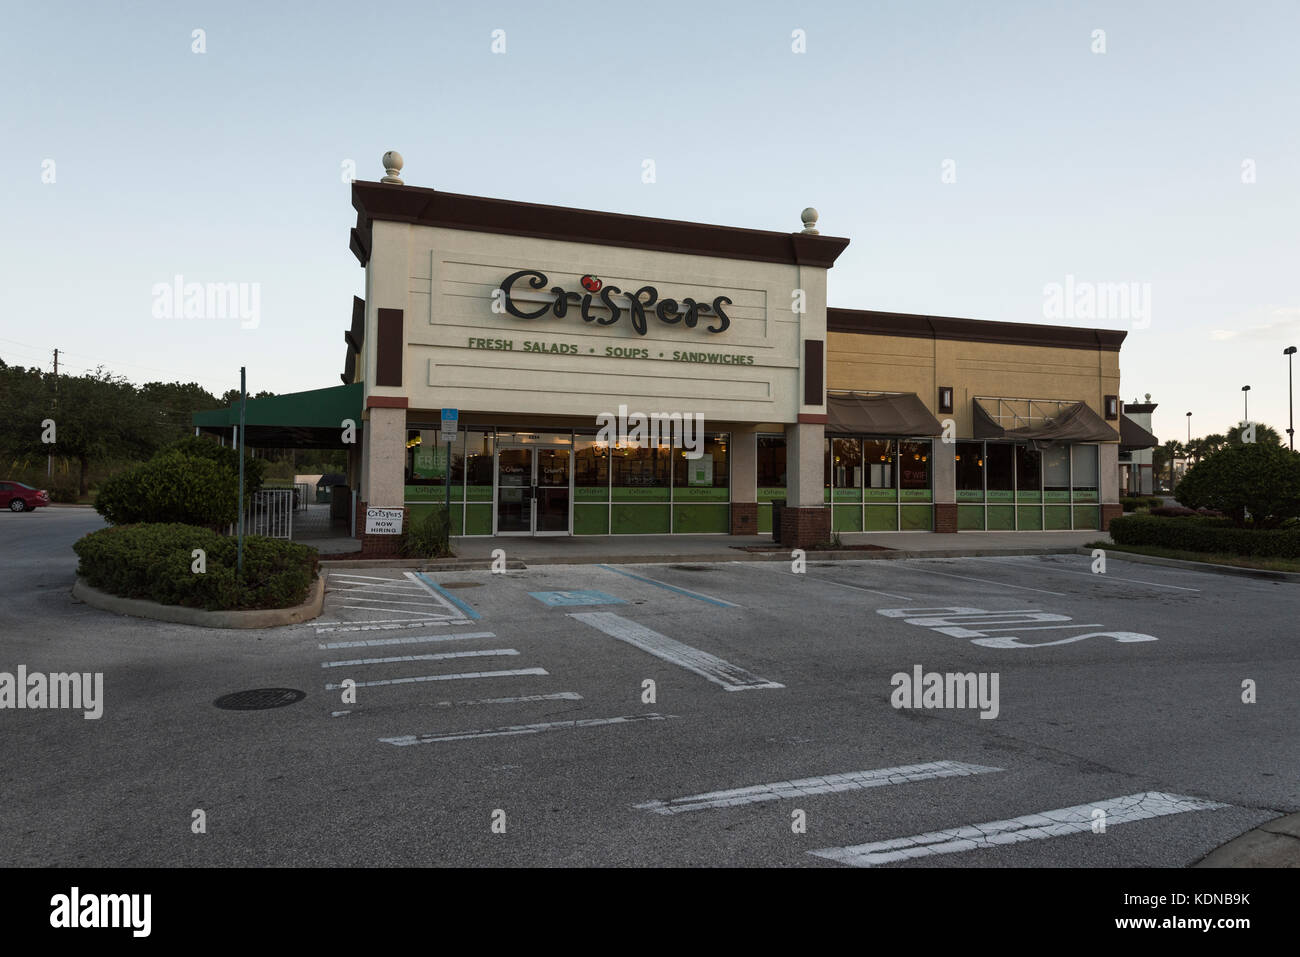 Crispers restaurante ubicado en Eustis, Florida, EE.UU. Foto de stock